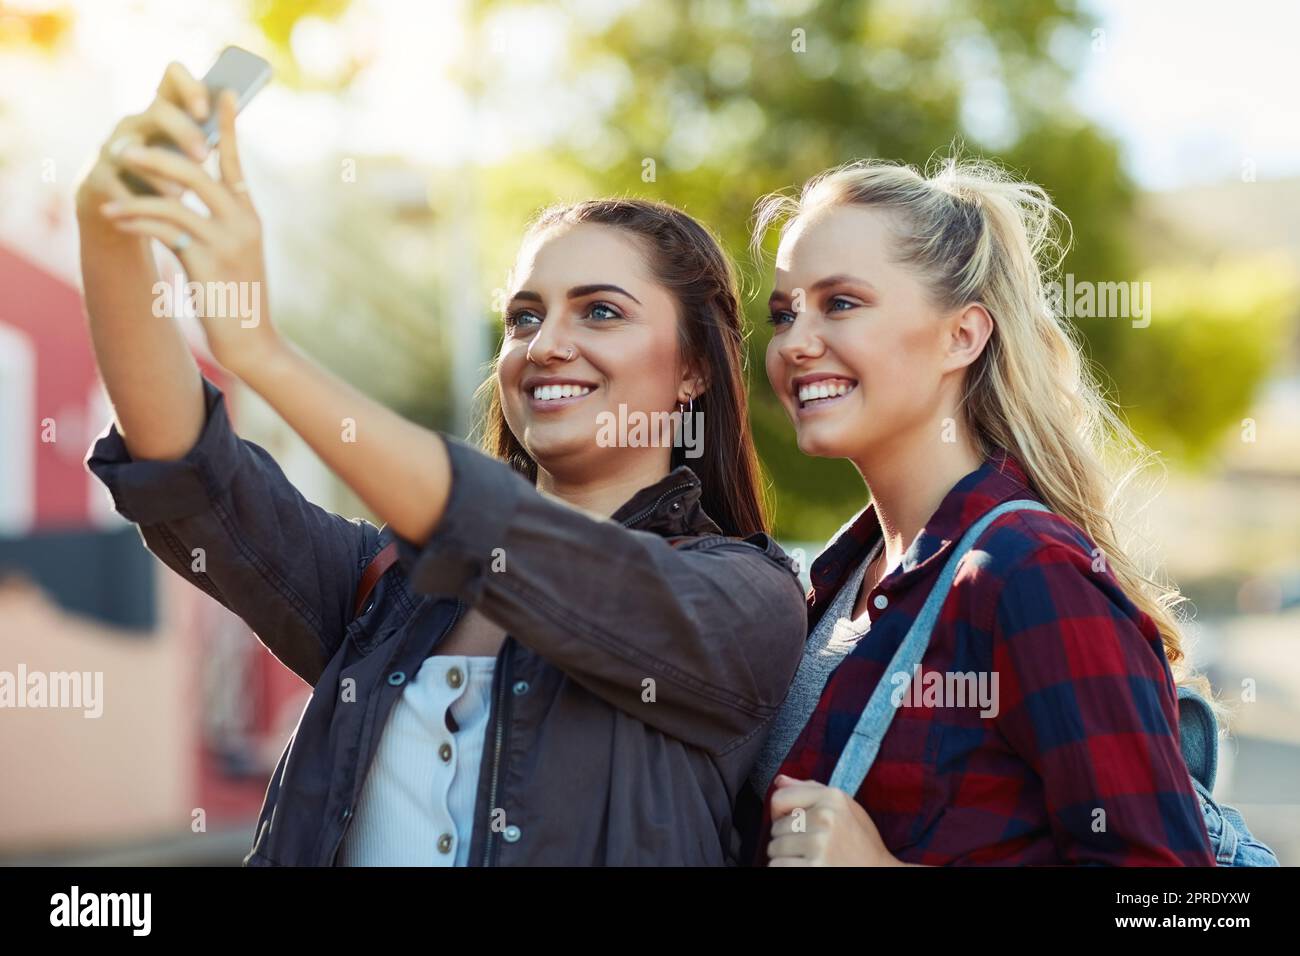 Scattiamo delle foto per dare un'occhiata alle nostre esperienze. Due belle amiche scattano un selfie in città. Foto Stock